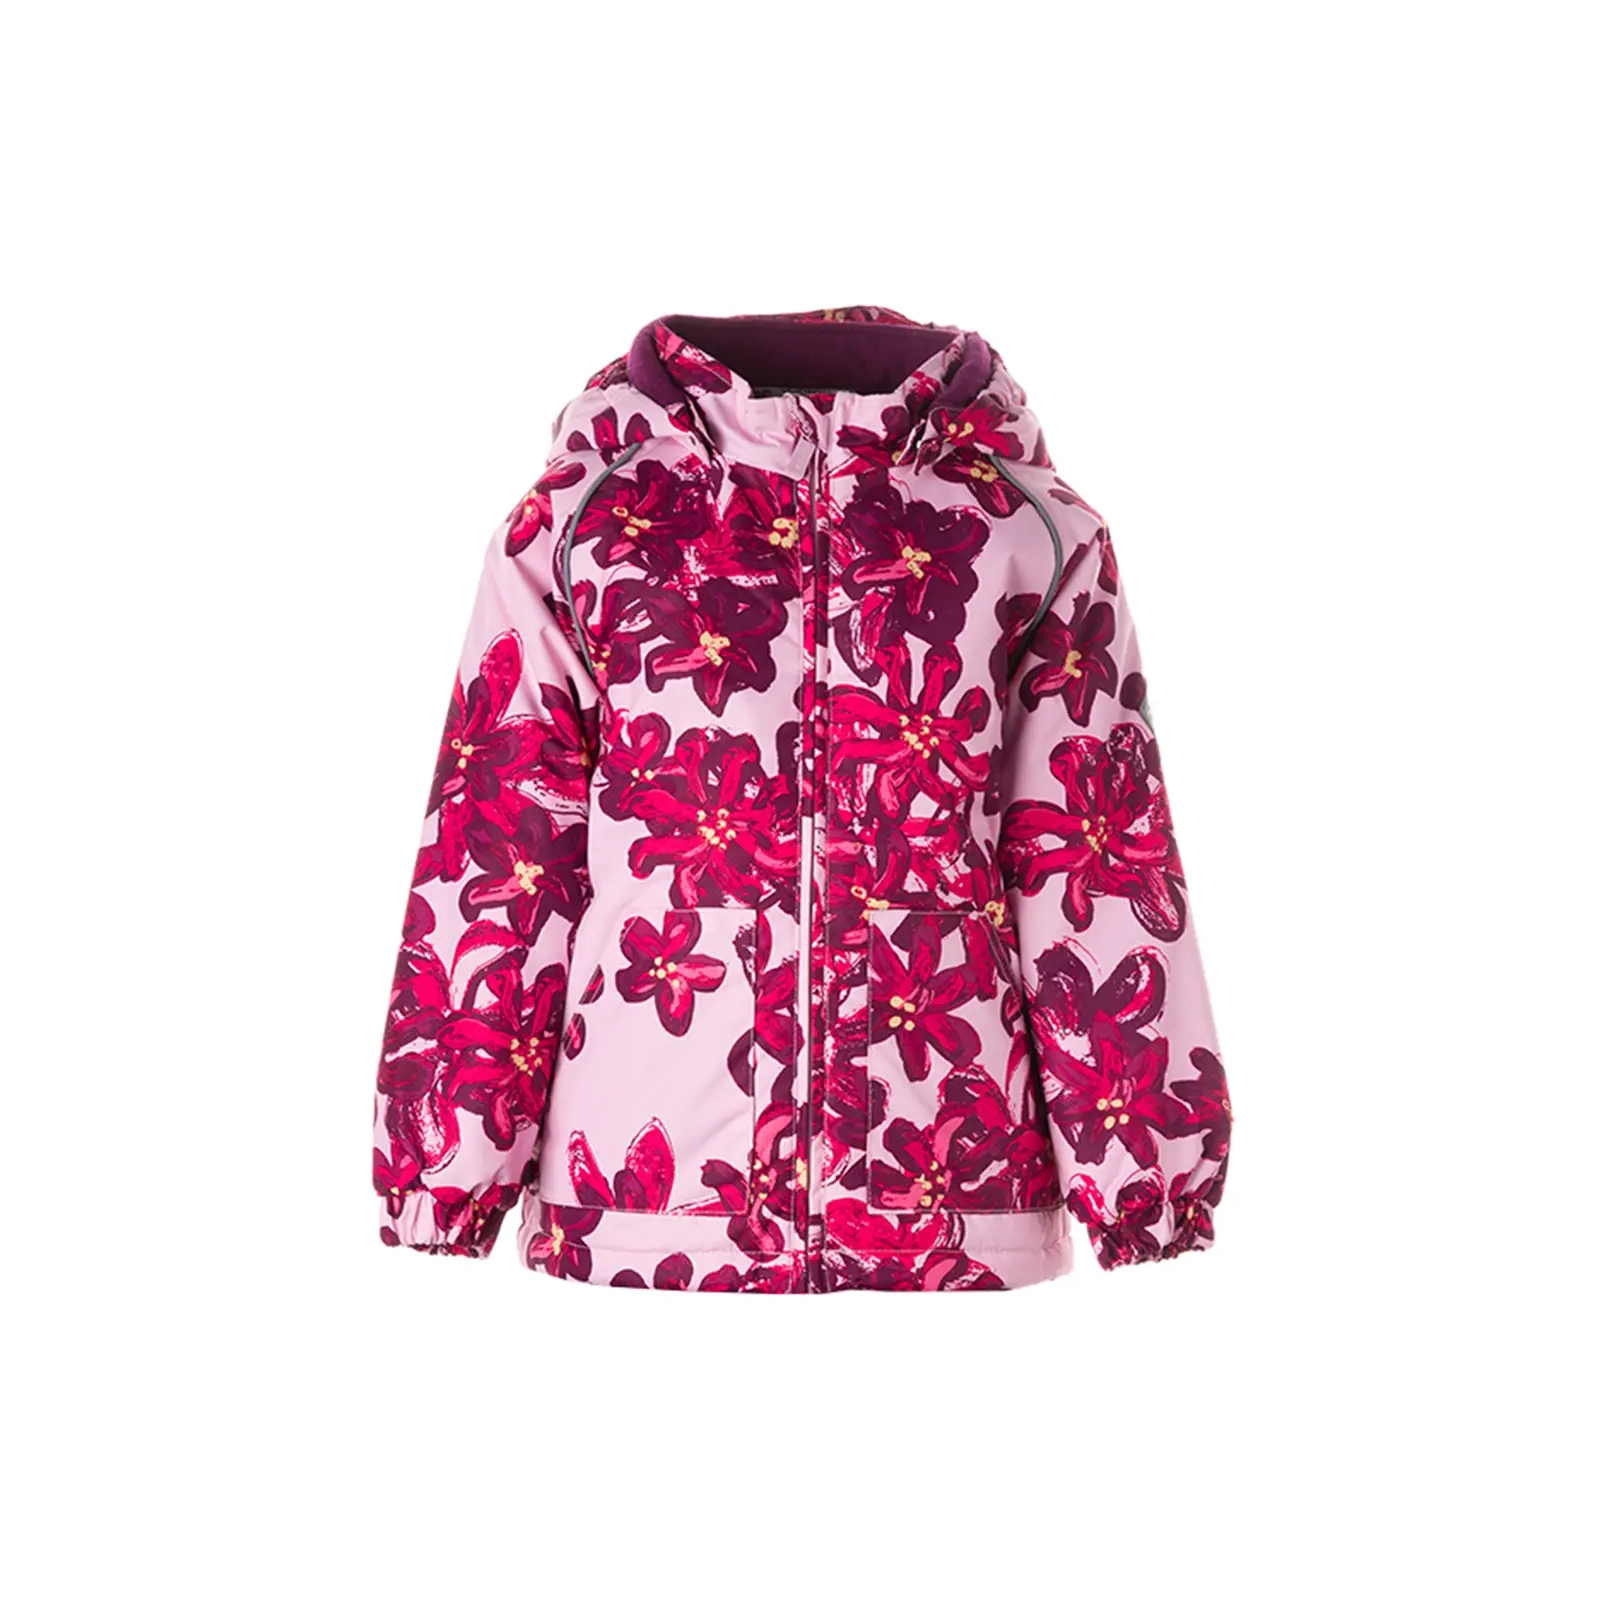 Куртка Huppa VIRGO 1 17210114 розовый с принтом 98 (4741632023840)